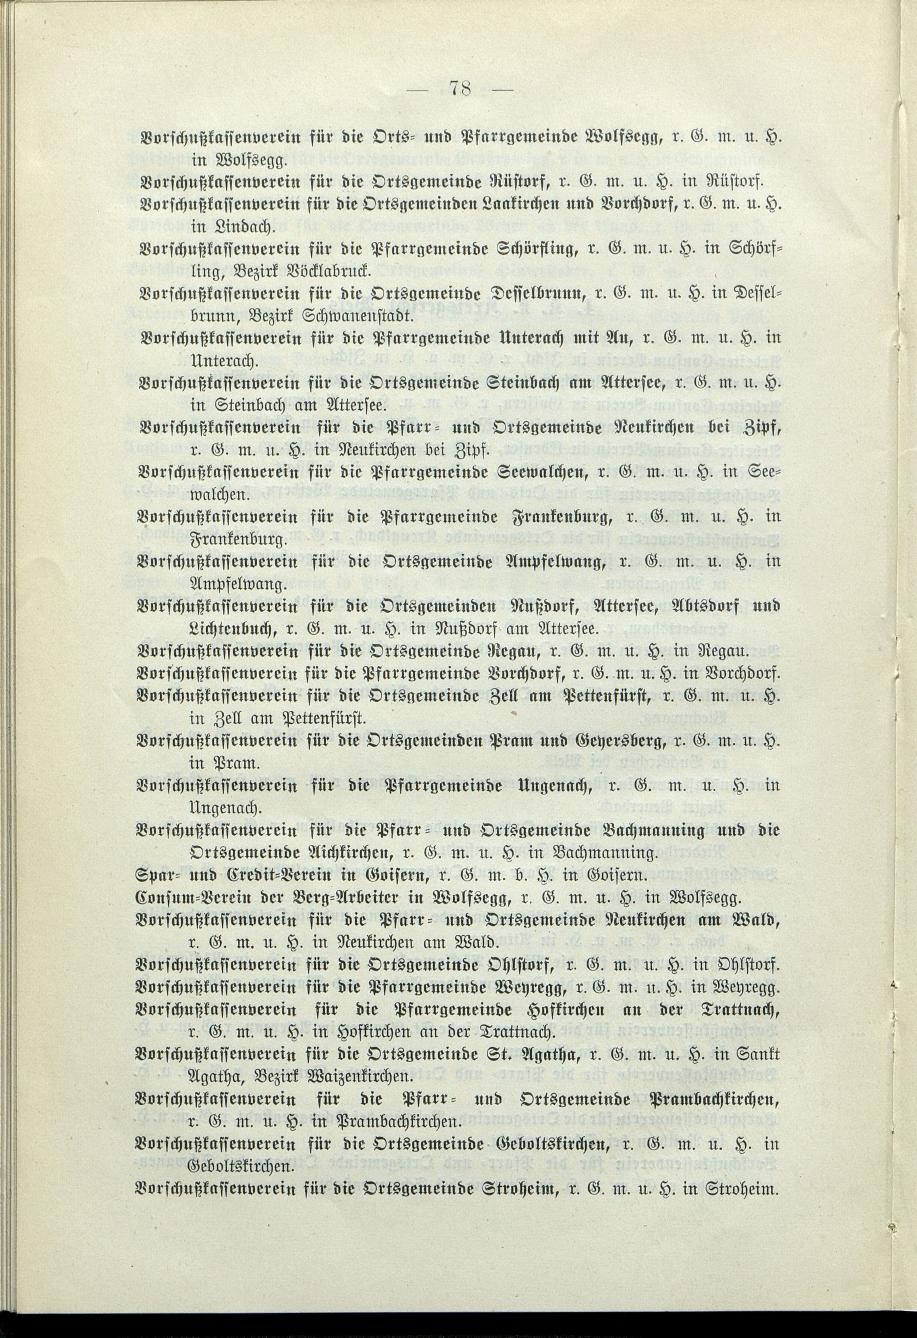 Verzeichnis der protokollierten Firmen und Genossenschaften in Oberösterreich 1908 - Page 82